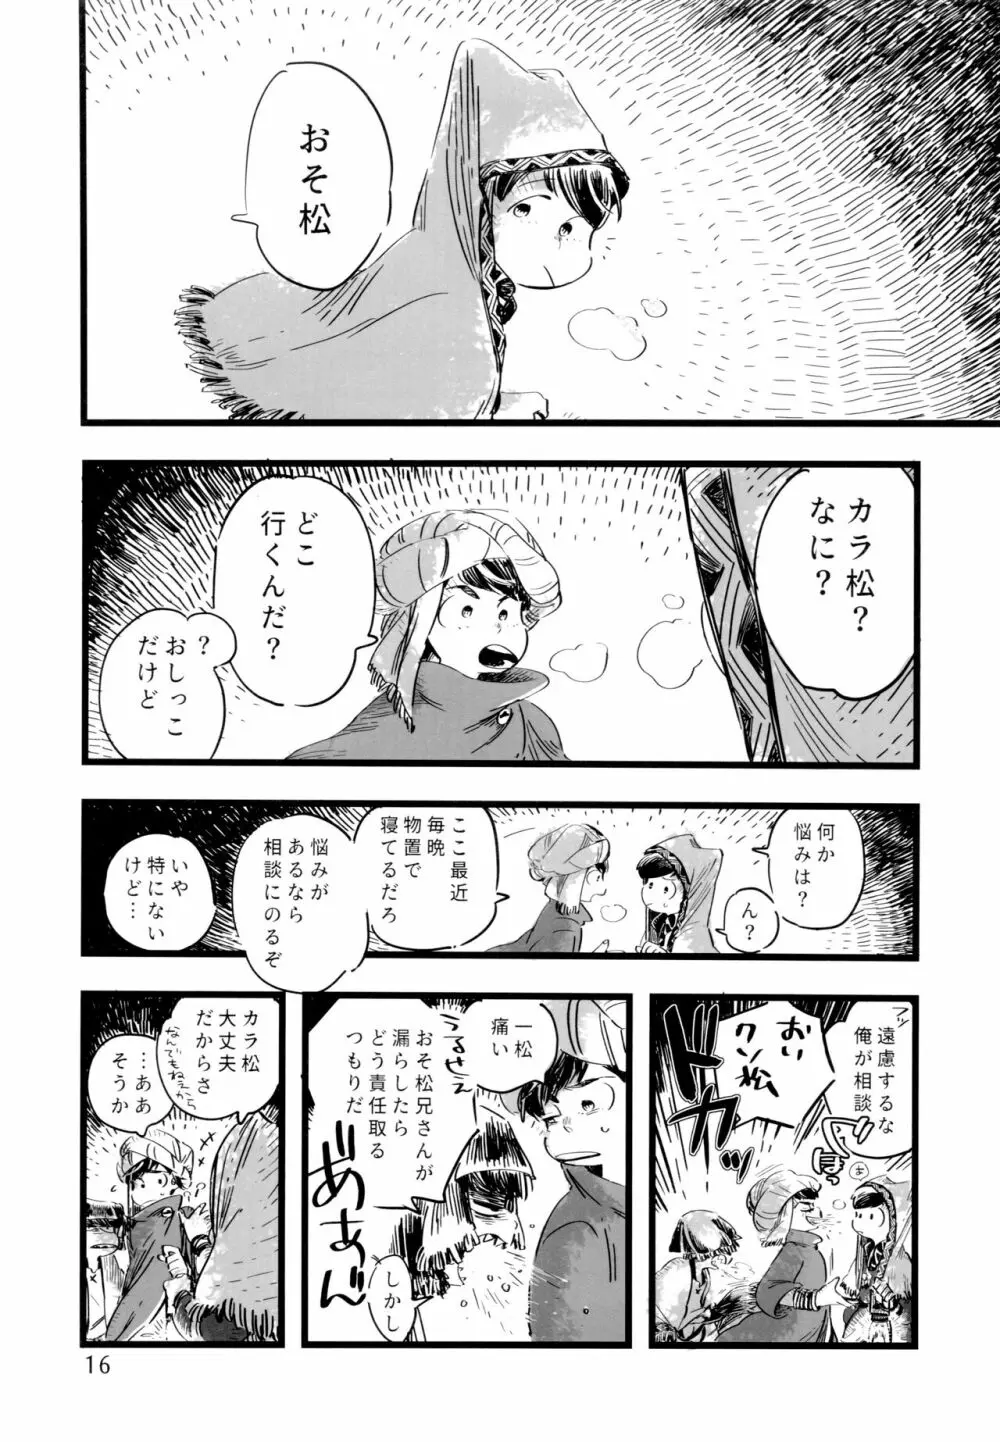 砂糖の蜂蜜煮 (しろ) ジンロウとツノみんぞく (おそ松さん) - page16